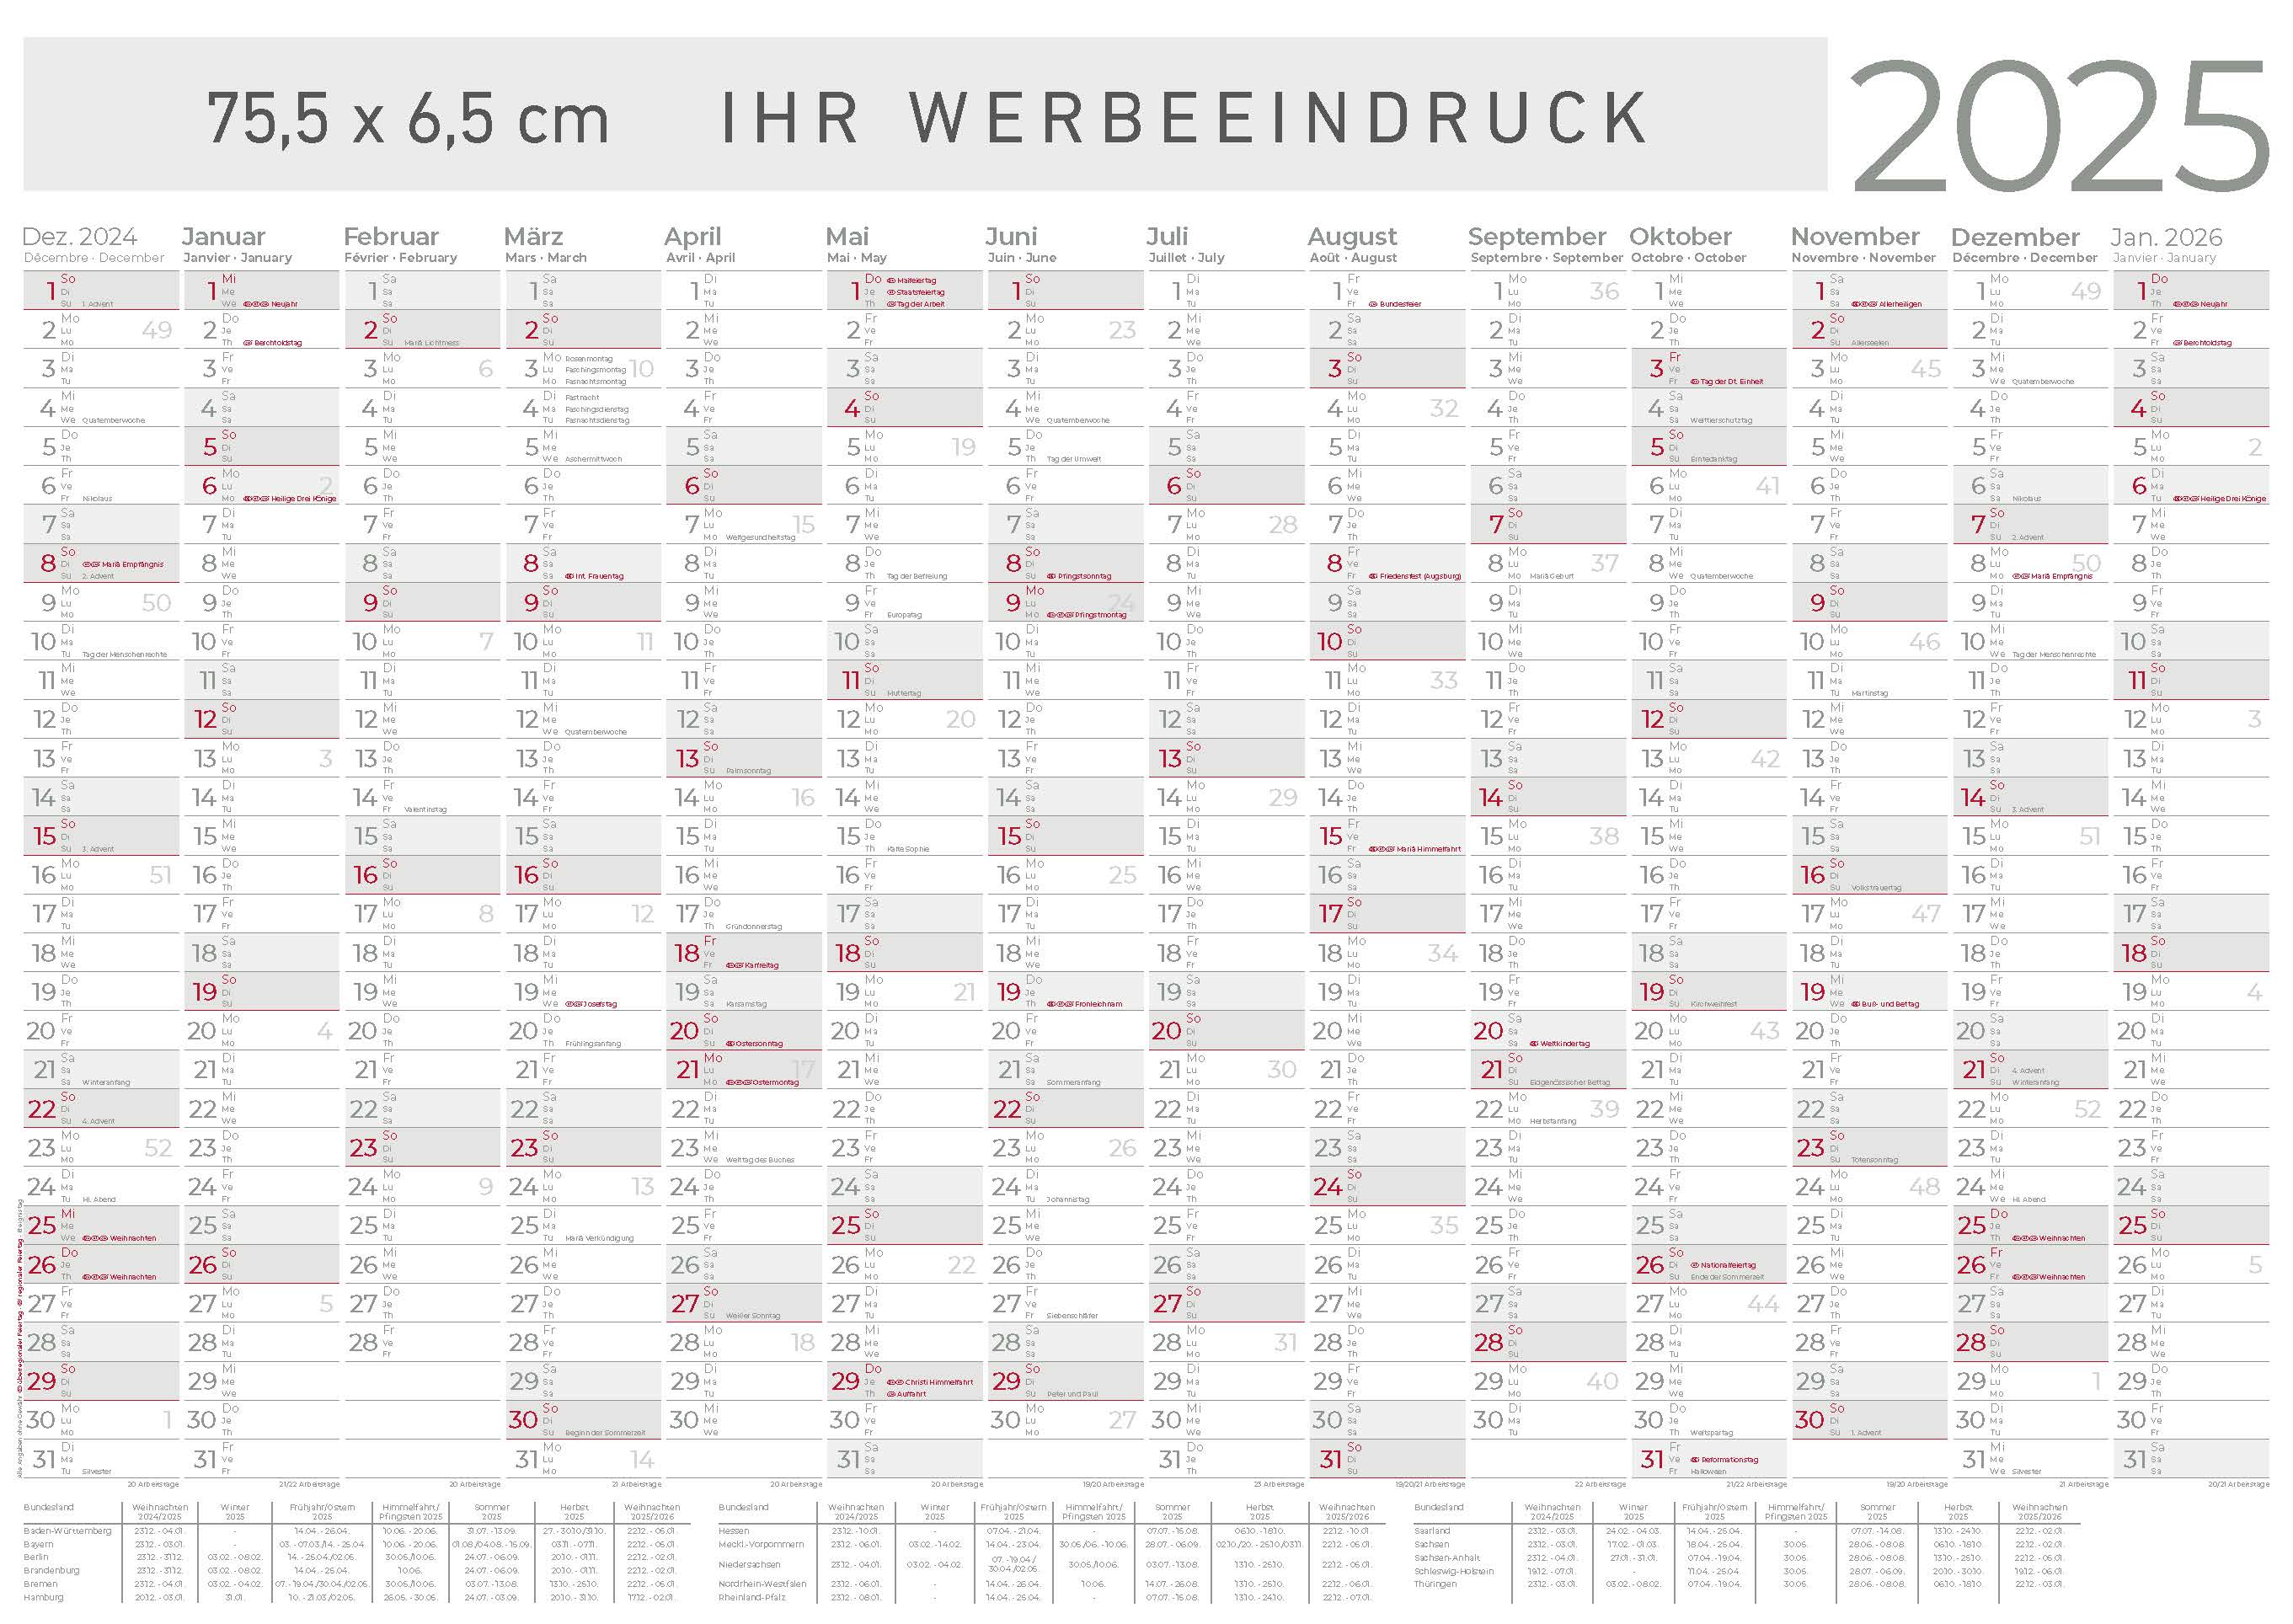 Jahresplaner Brombachsee XL
14 Monate grau/rot
Deutsch - 3-sprachig DE-AT-CH
Green-Edition